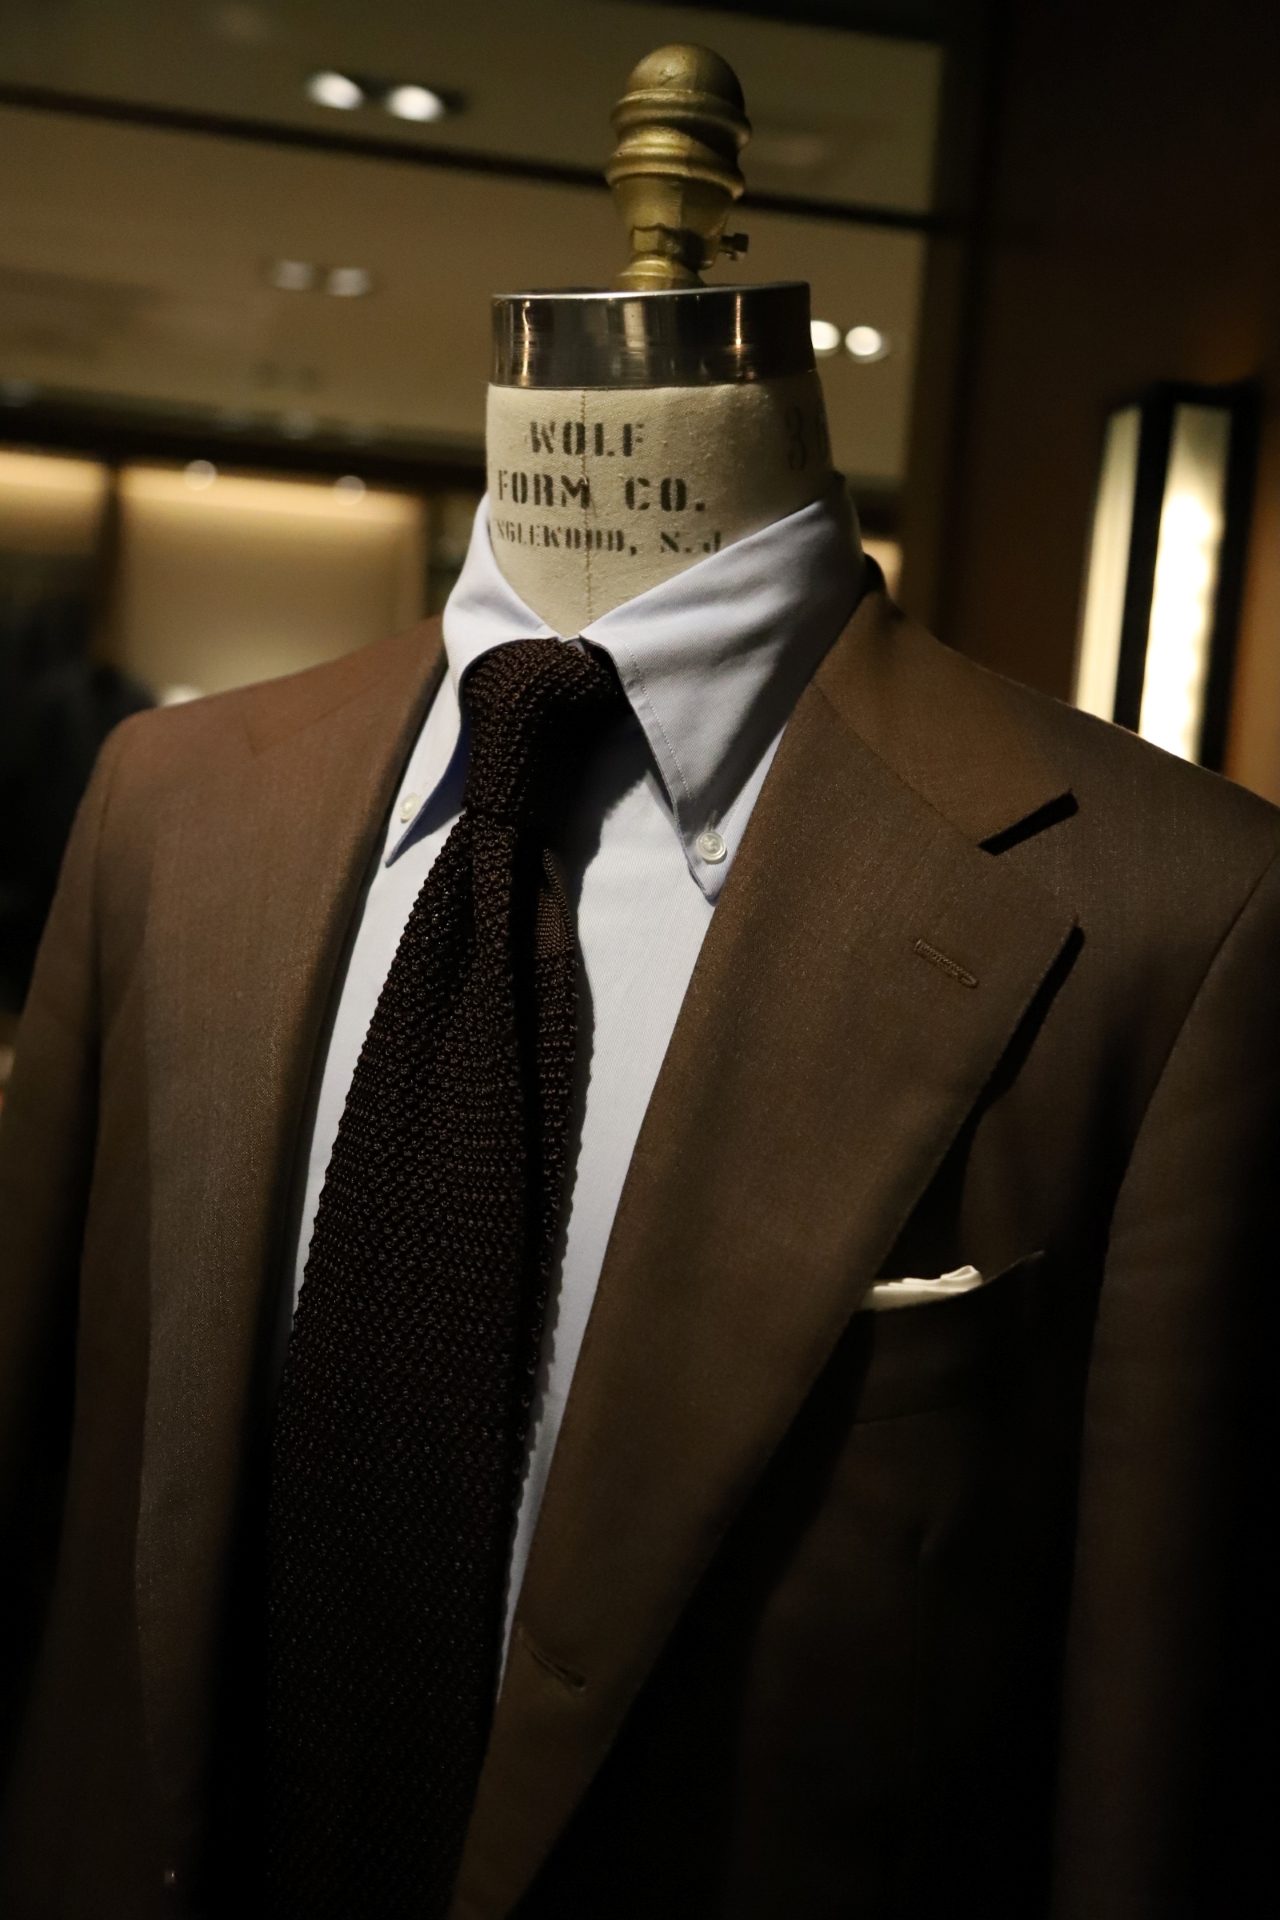 ボリエッロ（BORRIELLO）のネイビーのオーダーシャツとブラウンのオーダースーツ、アット ヴァンヌッチAtto Vannucci）のブラウンのニットタイを合わせたコーディネートです。スーツはTHE G'S HIDEOUT.オリジナルの1着です。